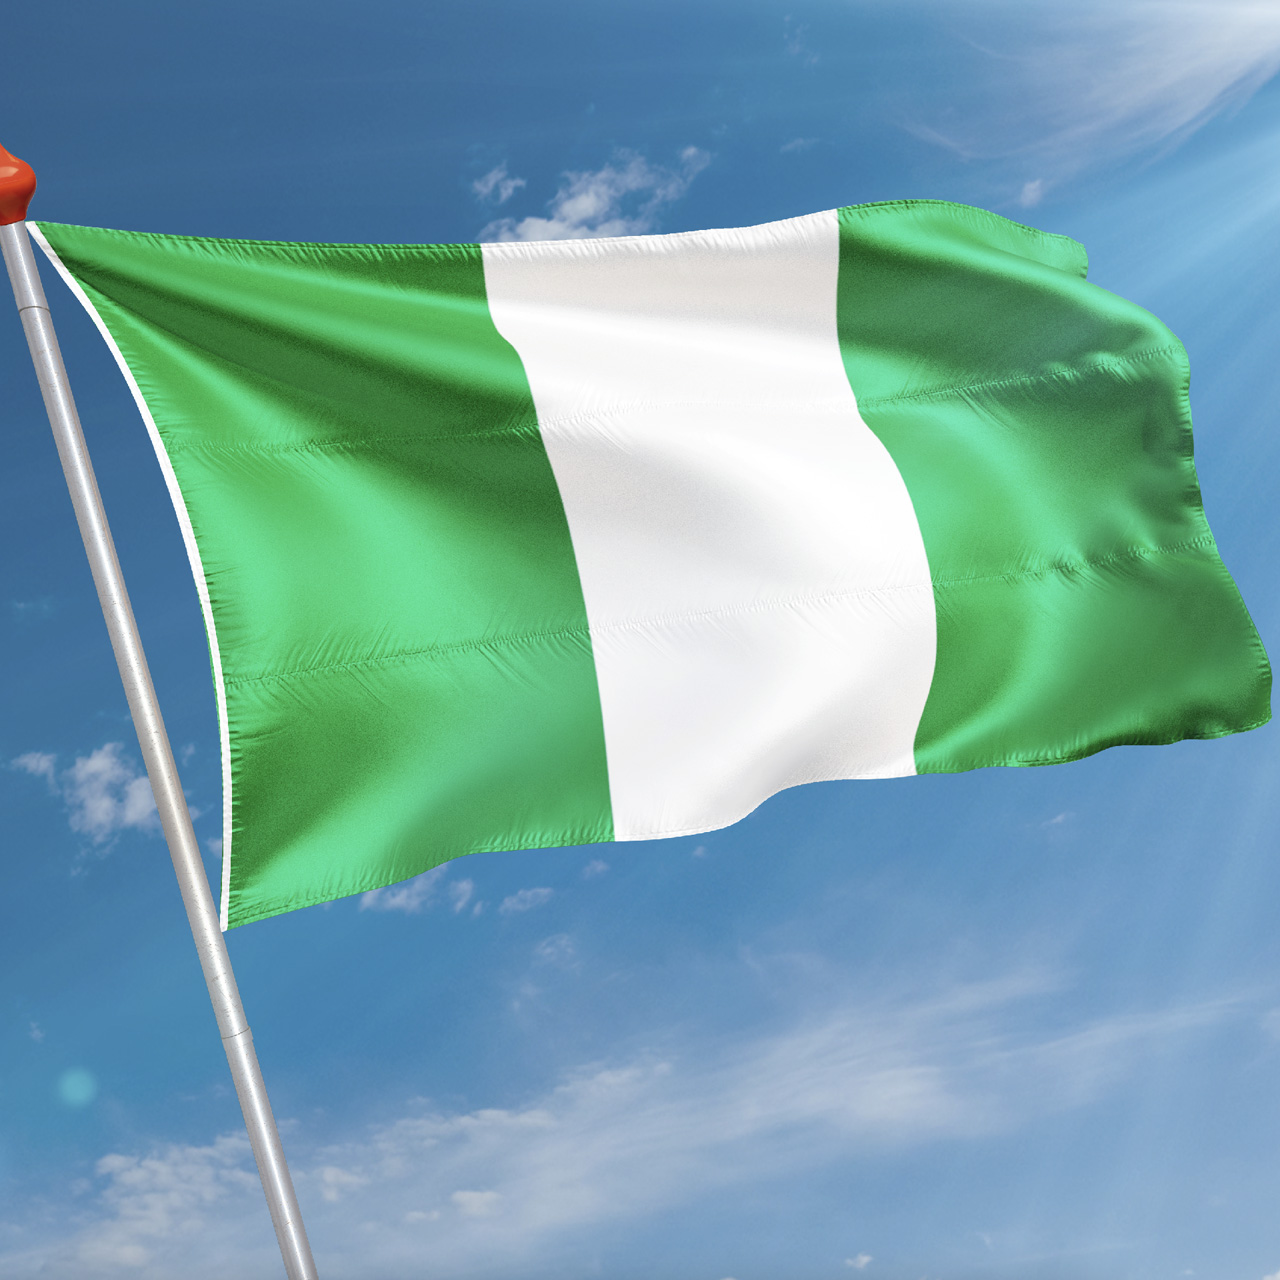 Ontdek de kleurrijke vlaggen: De betovering van Bennekom en de Nigeriaanse vlag